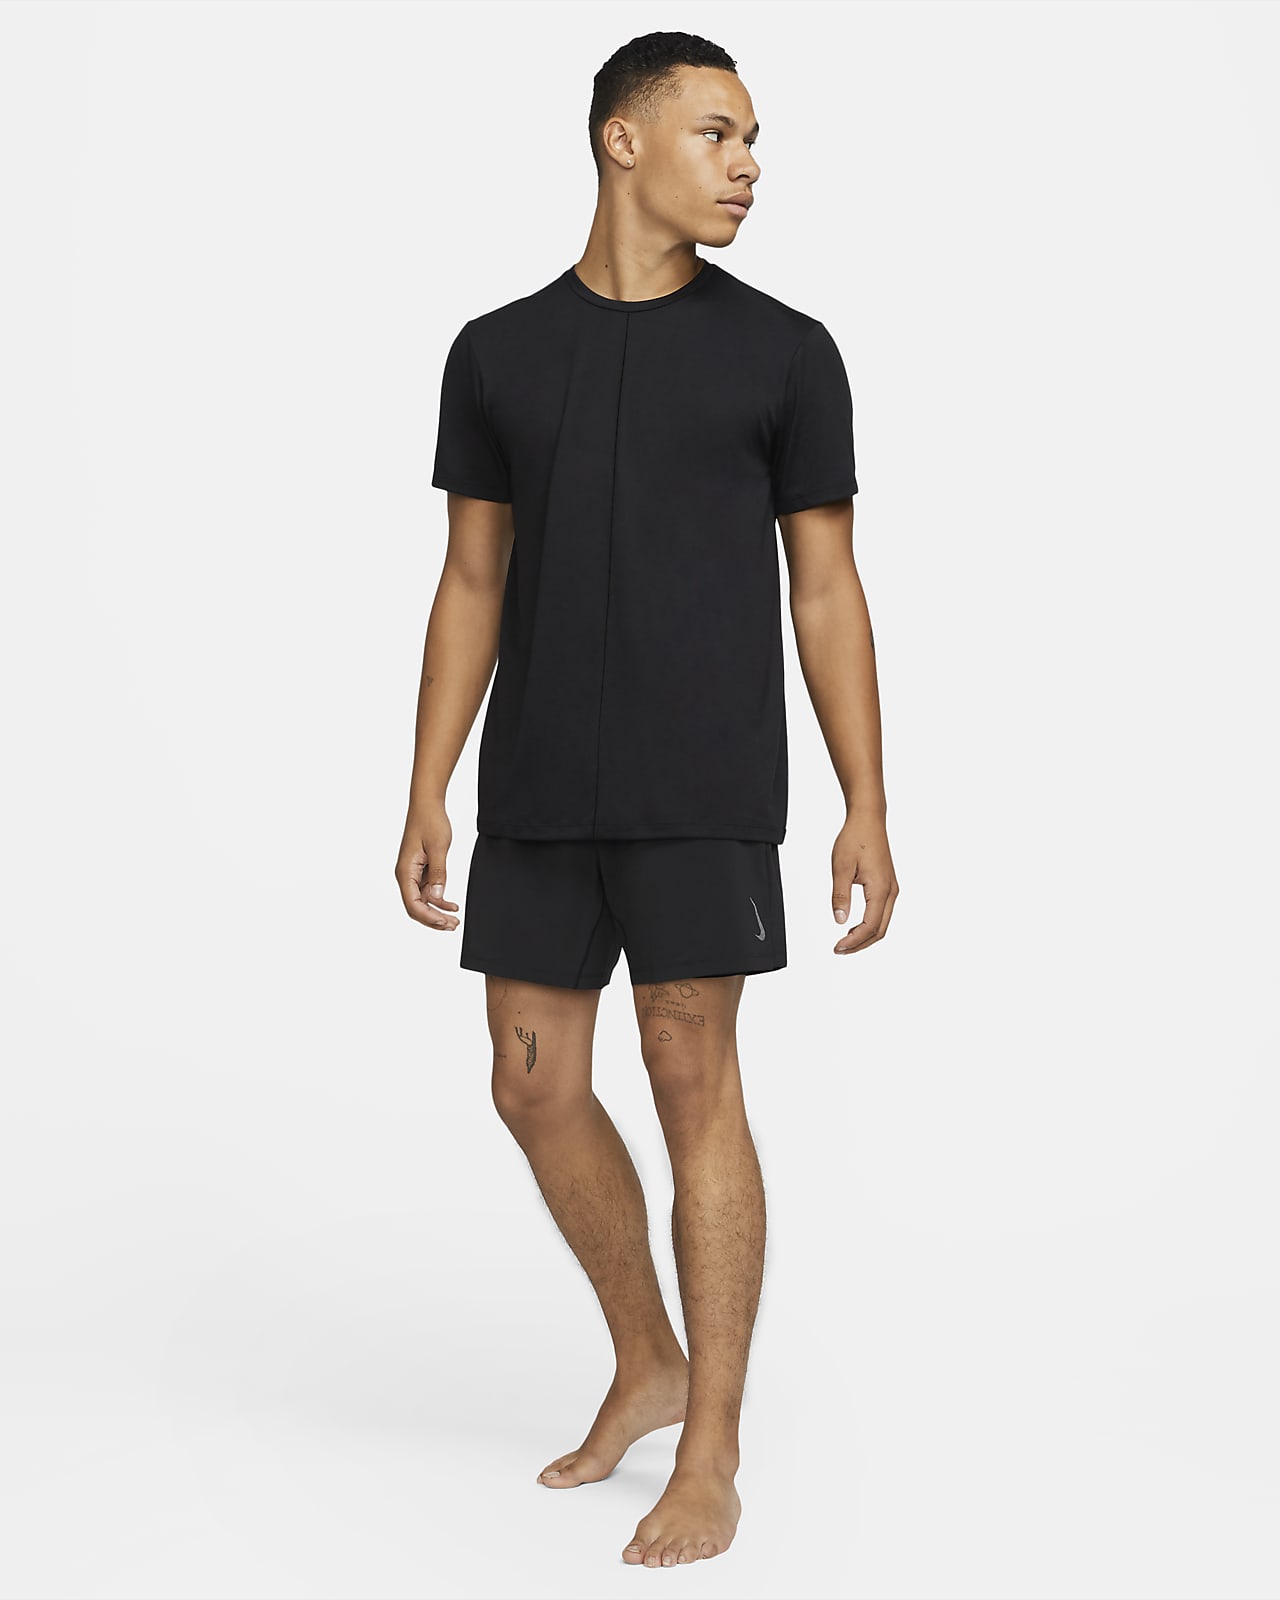 Nike Men's Yoga Shorts